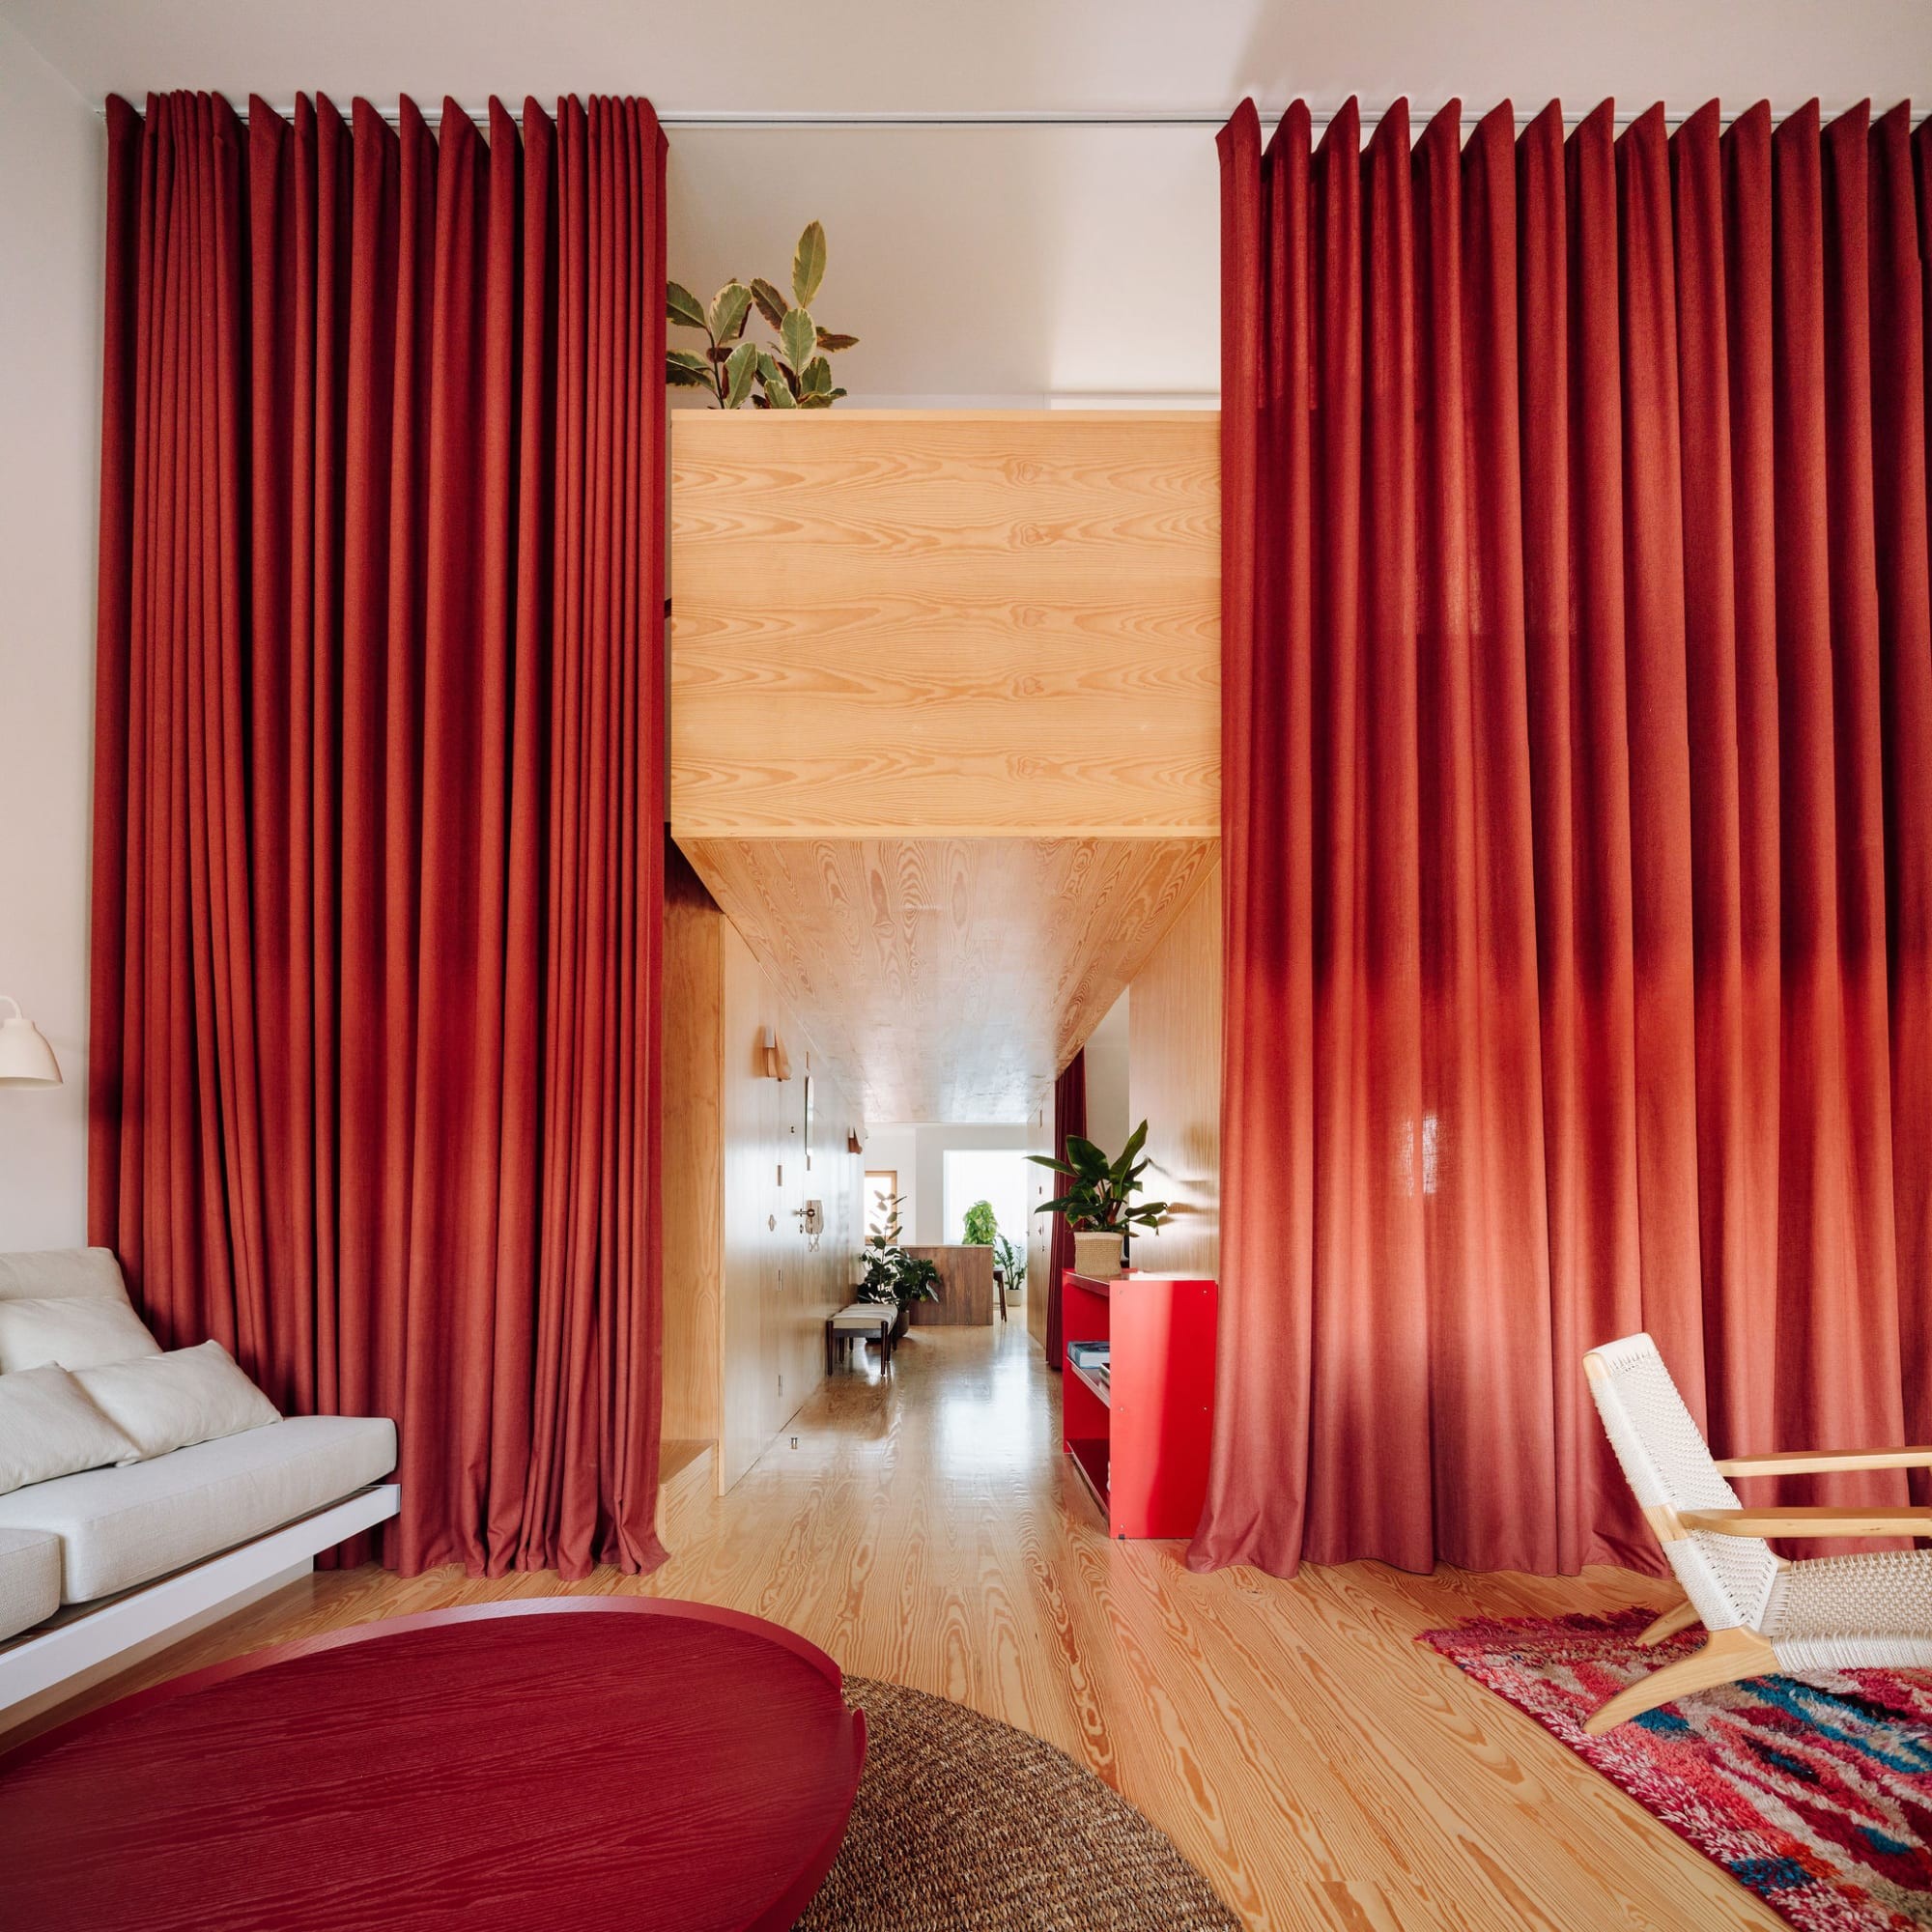 Décor do dia: sala de estar com lareira e clima aconchegante (Foto: Francisco Nogueira)